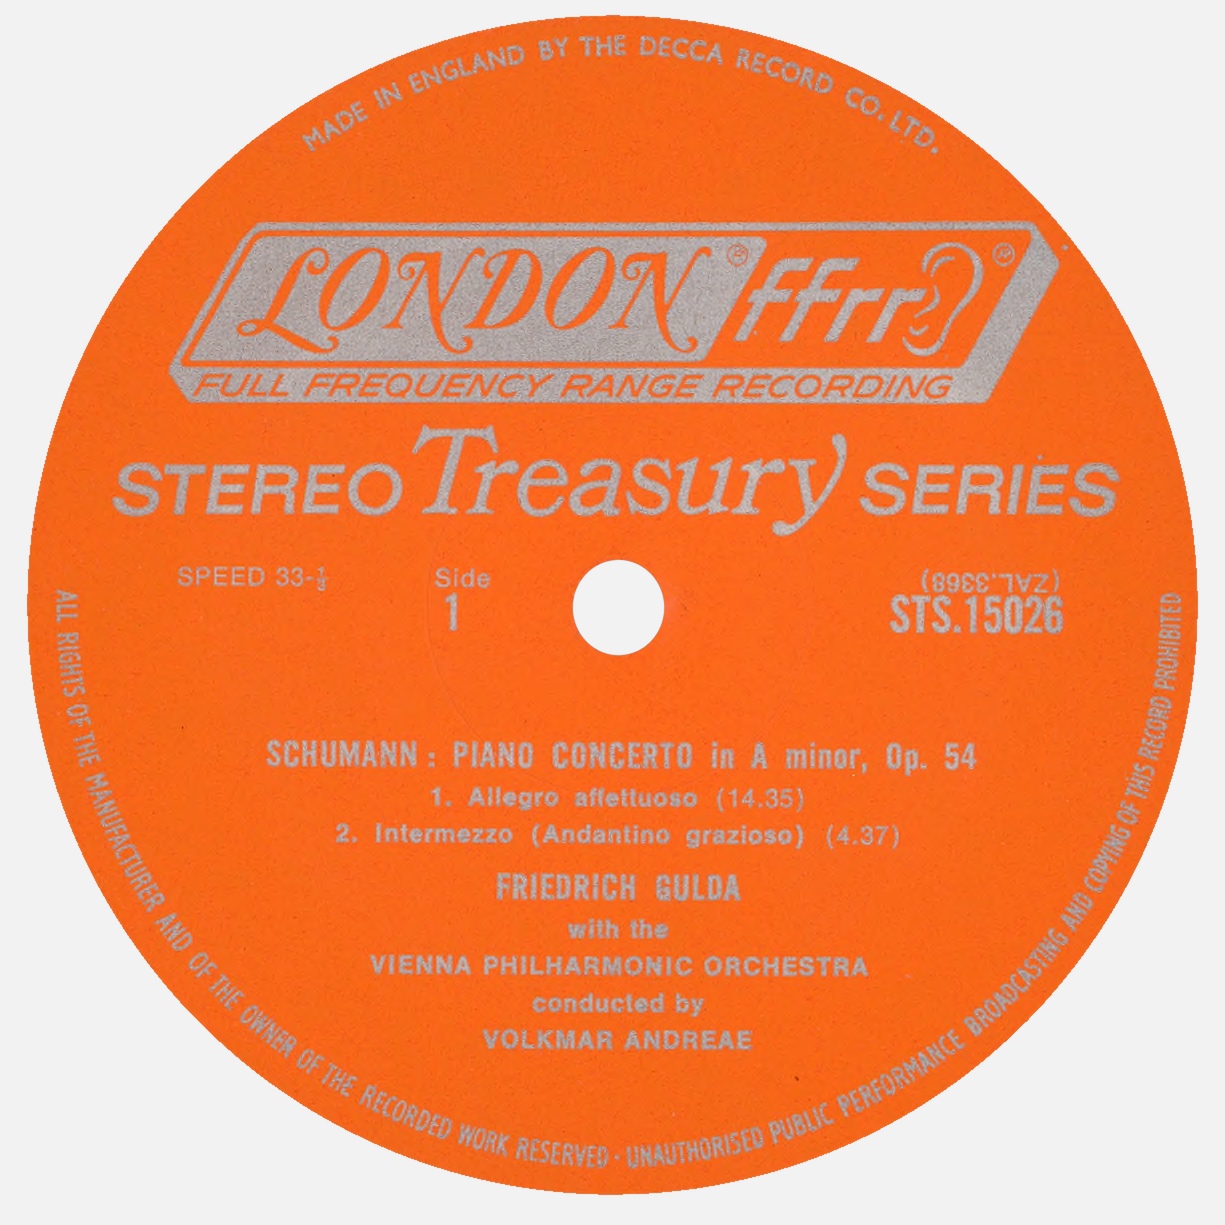 Étiquette recto du disque LONDON STS 1502